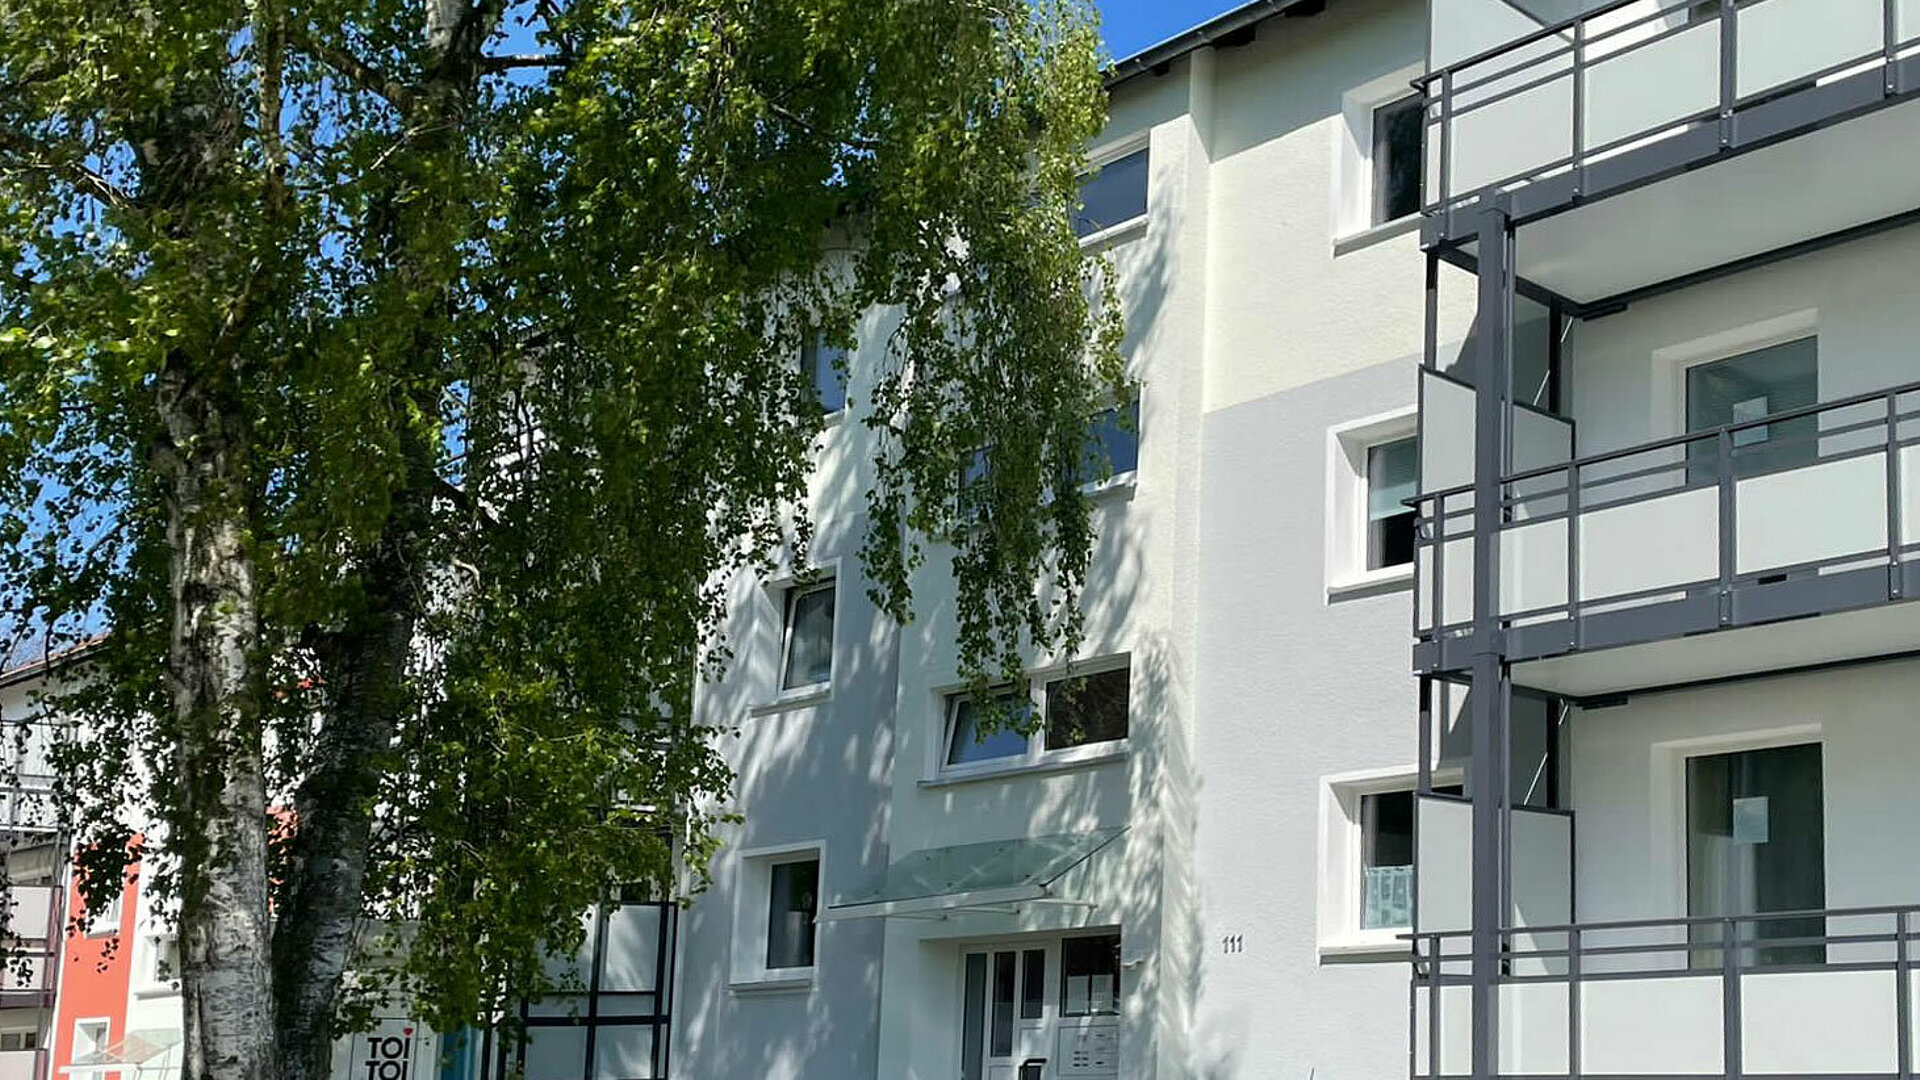 Balkonbau in Dortmund mit G&S die balkonbauer - 01